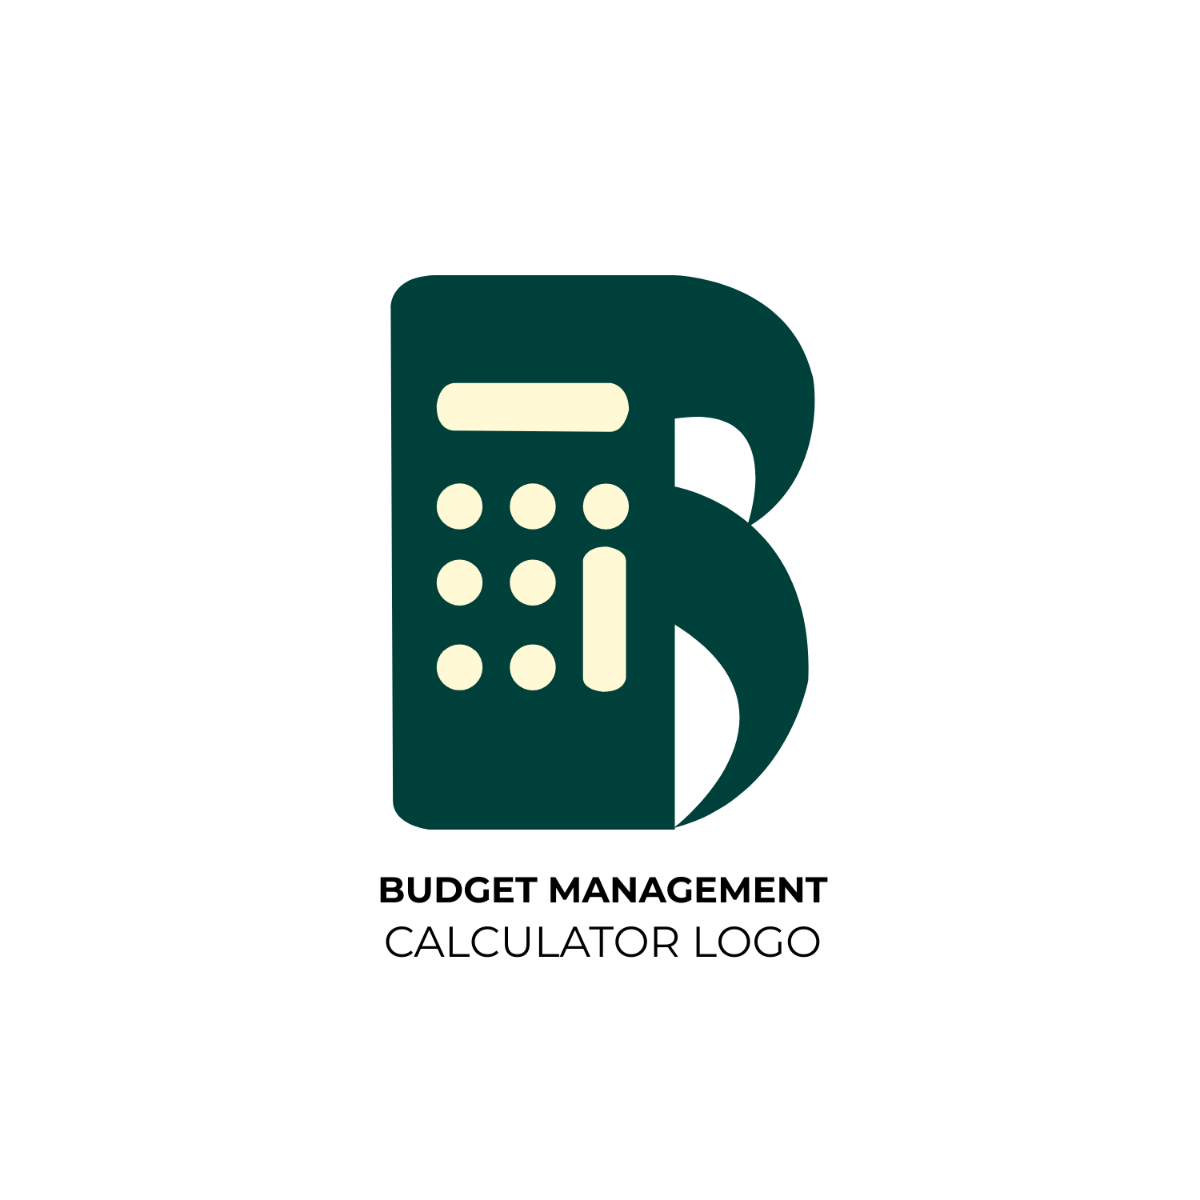 Budget Management Calculator Logo